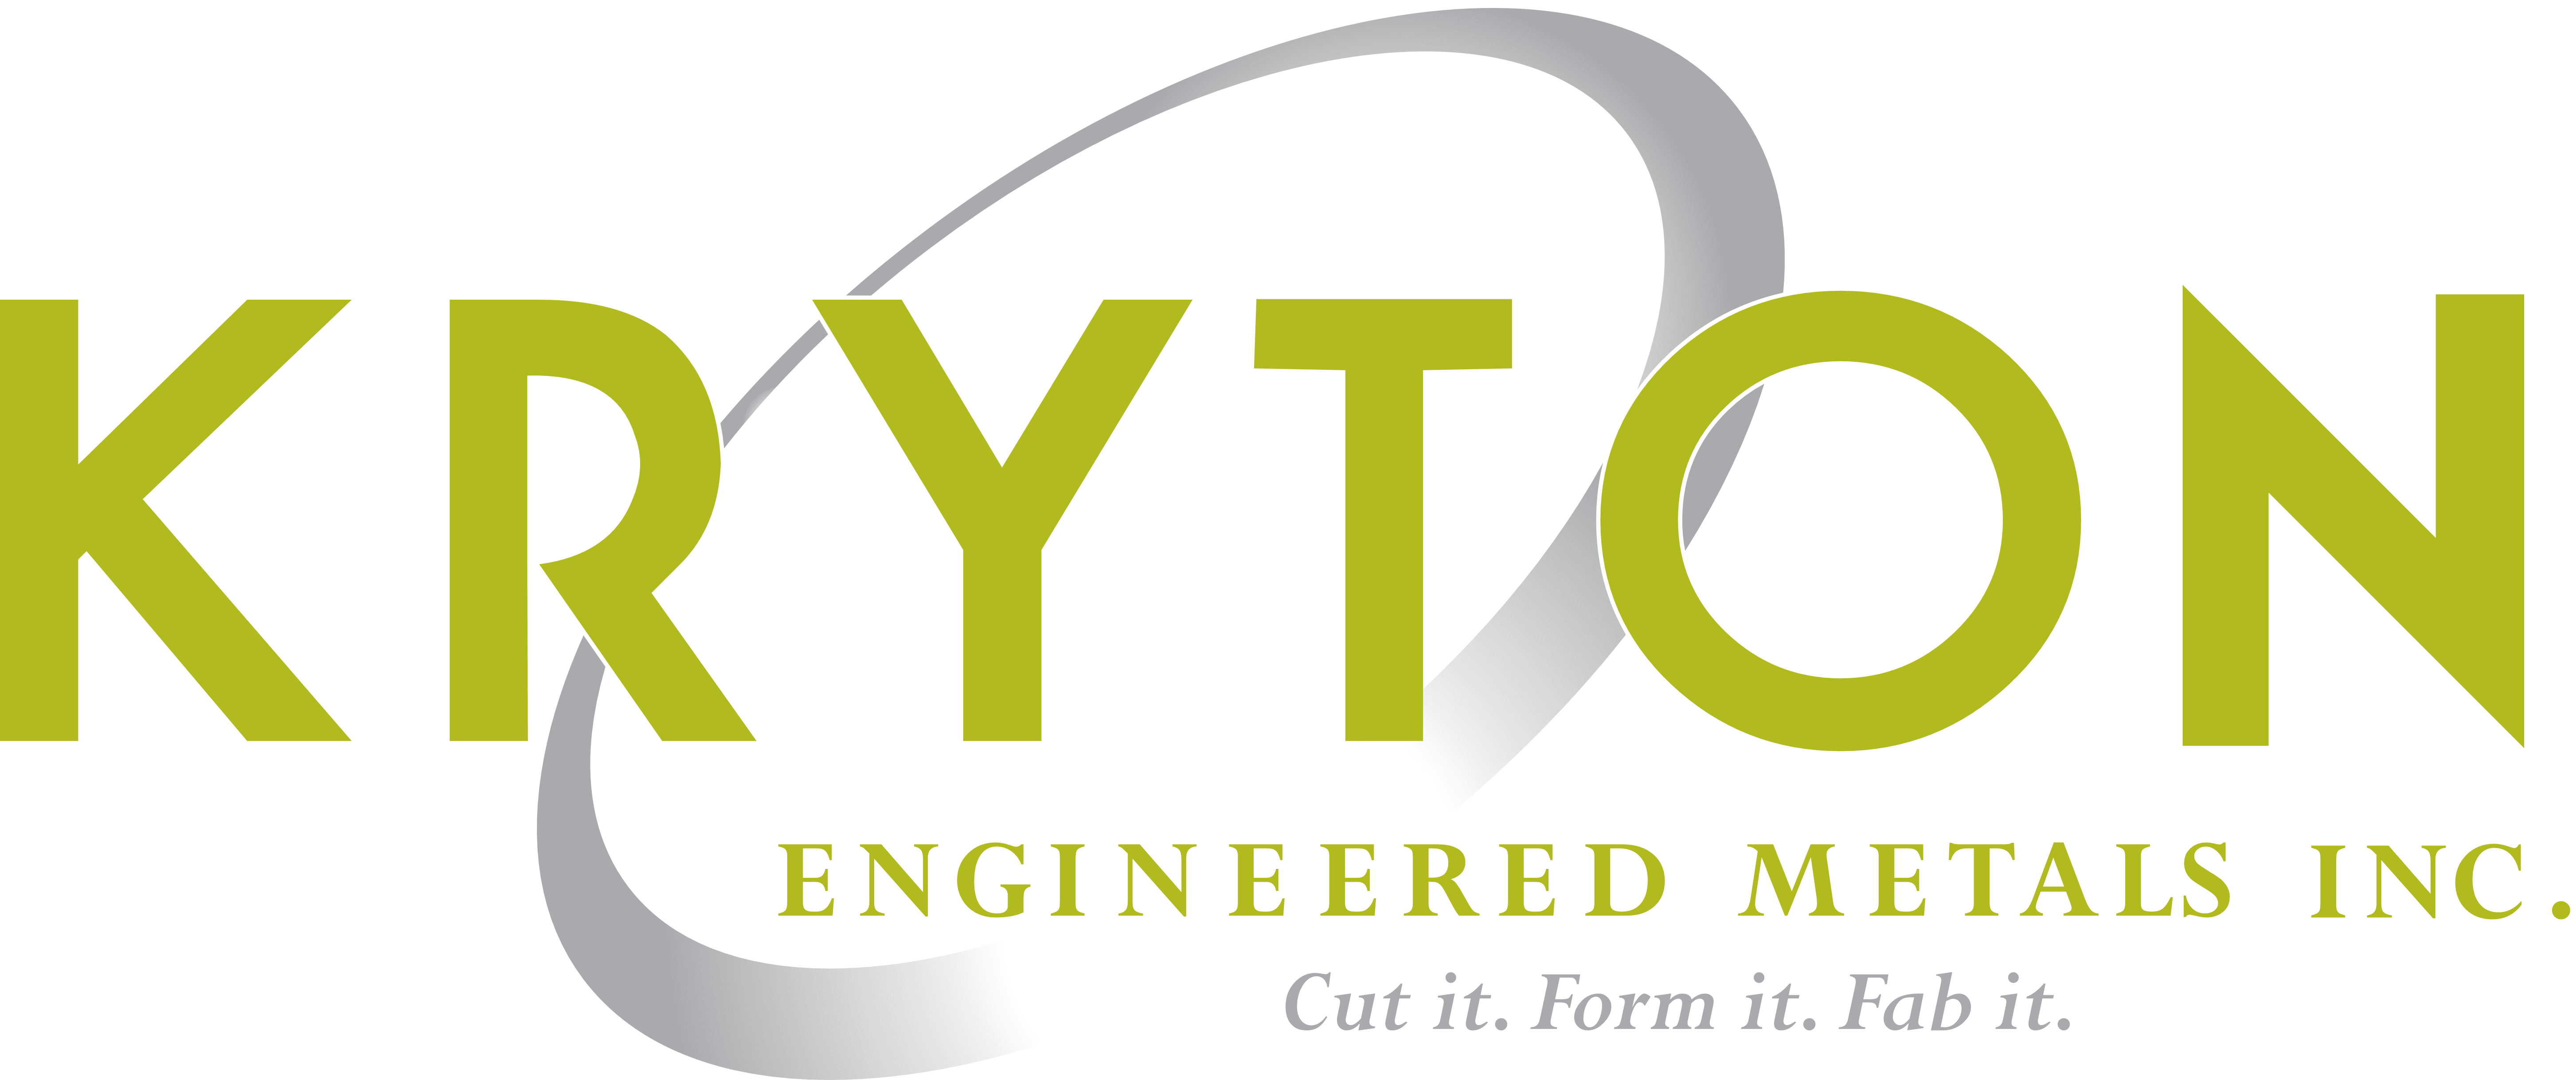 kryton-logos